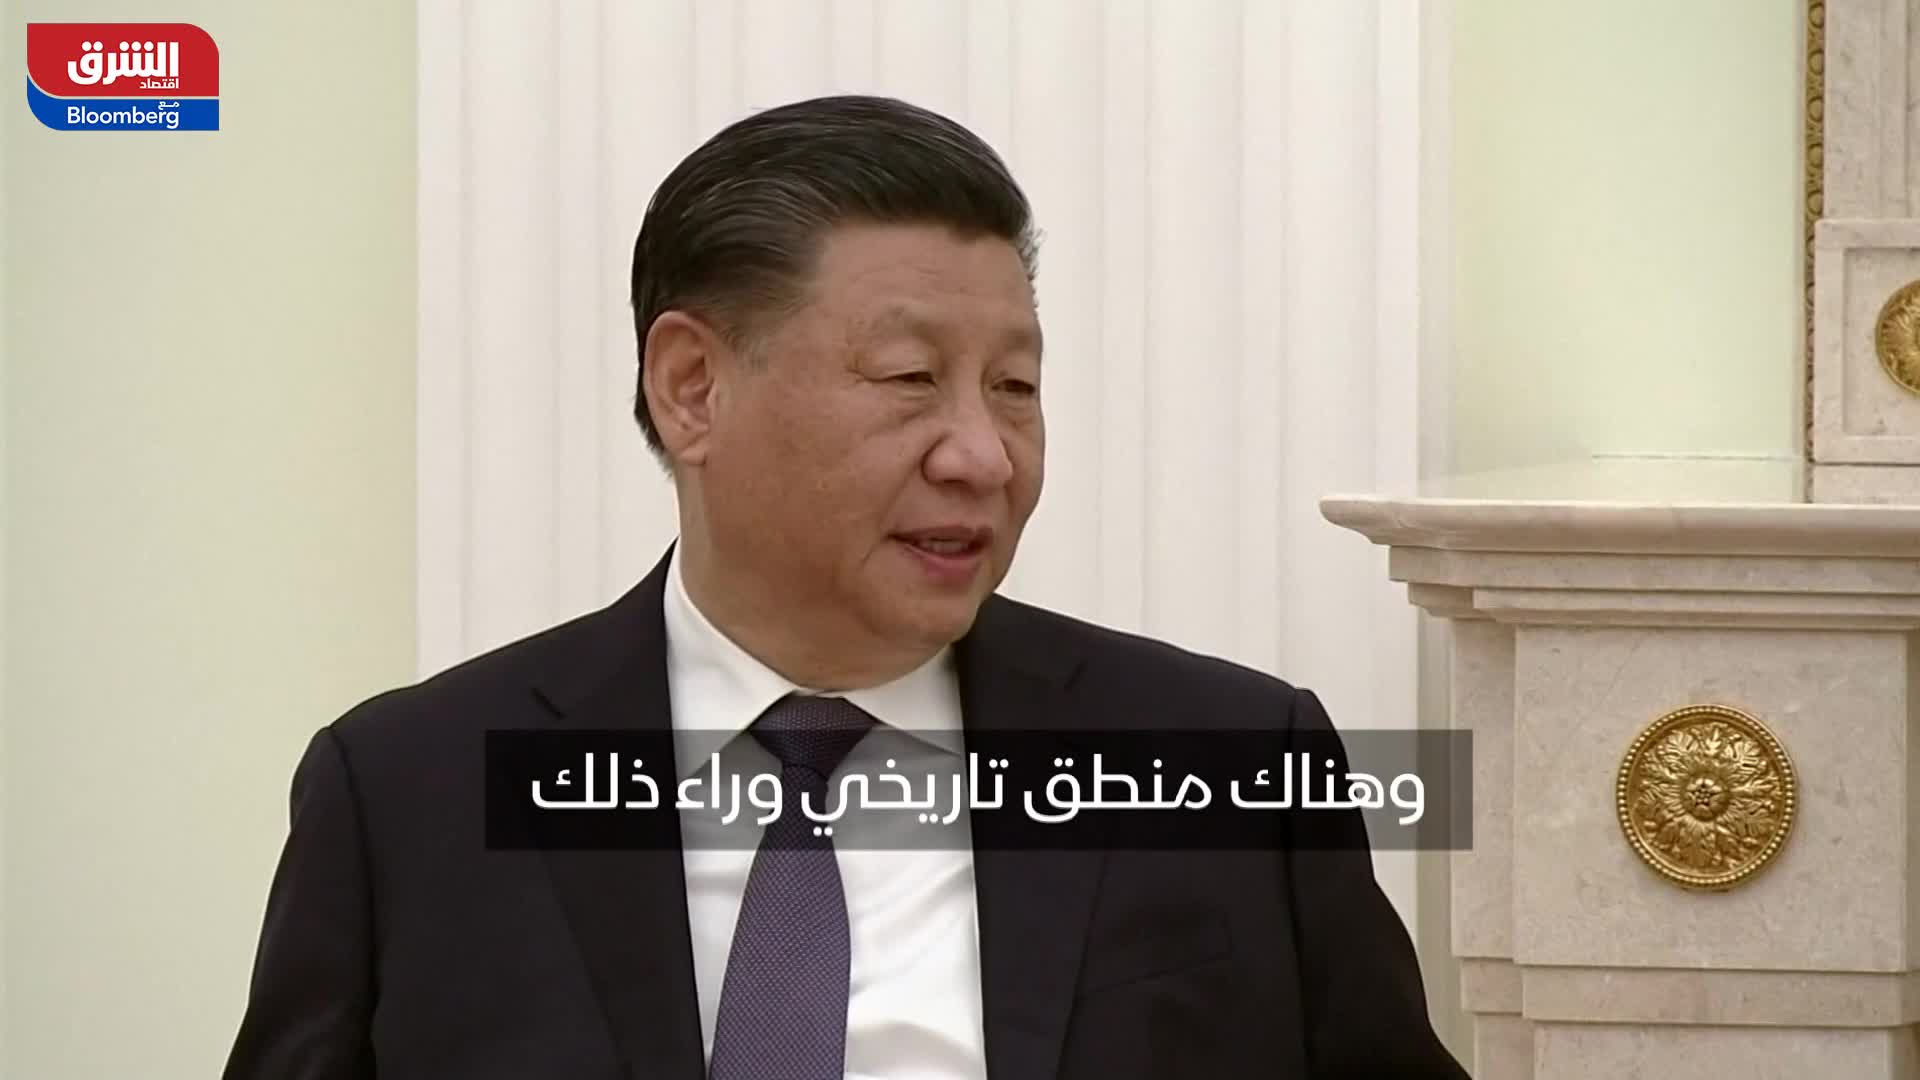 الرئيس الصيني: هناك أهمية كبيرة للعلاقات مع روسيا لأننا شركاء استراتيجيون